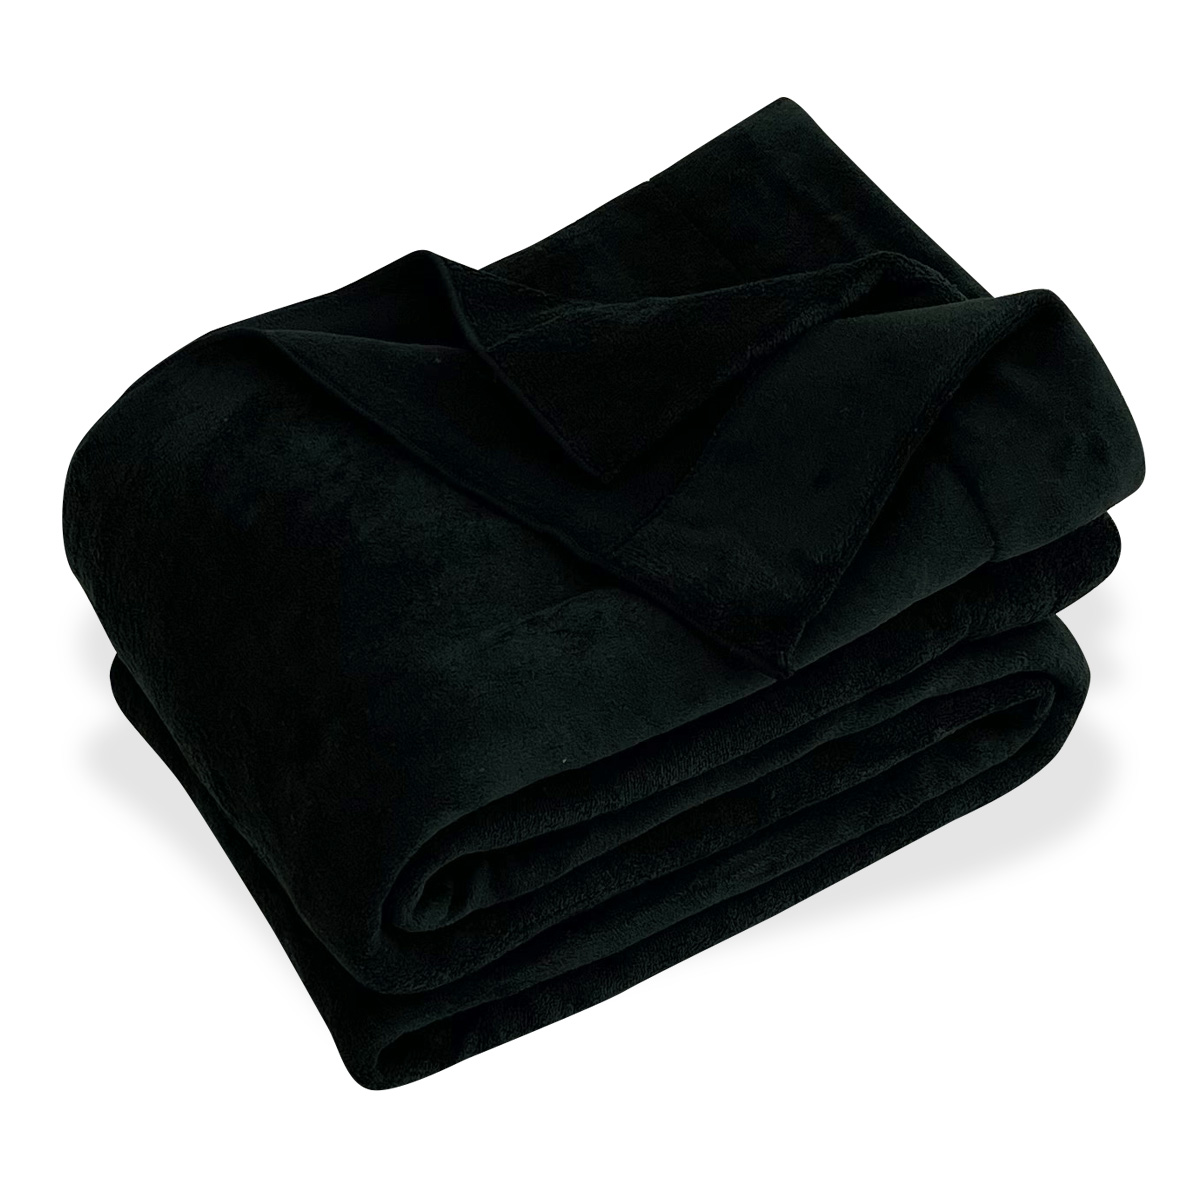 オールシーズン使える シャーリングケット ダブルサイズ ブランケット タオルケット 吸水速乾 毛布